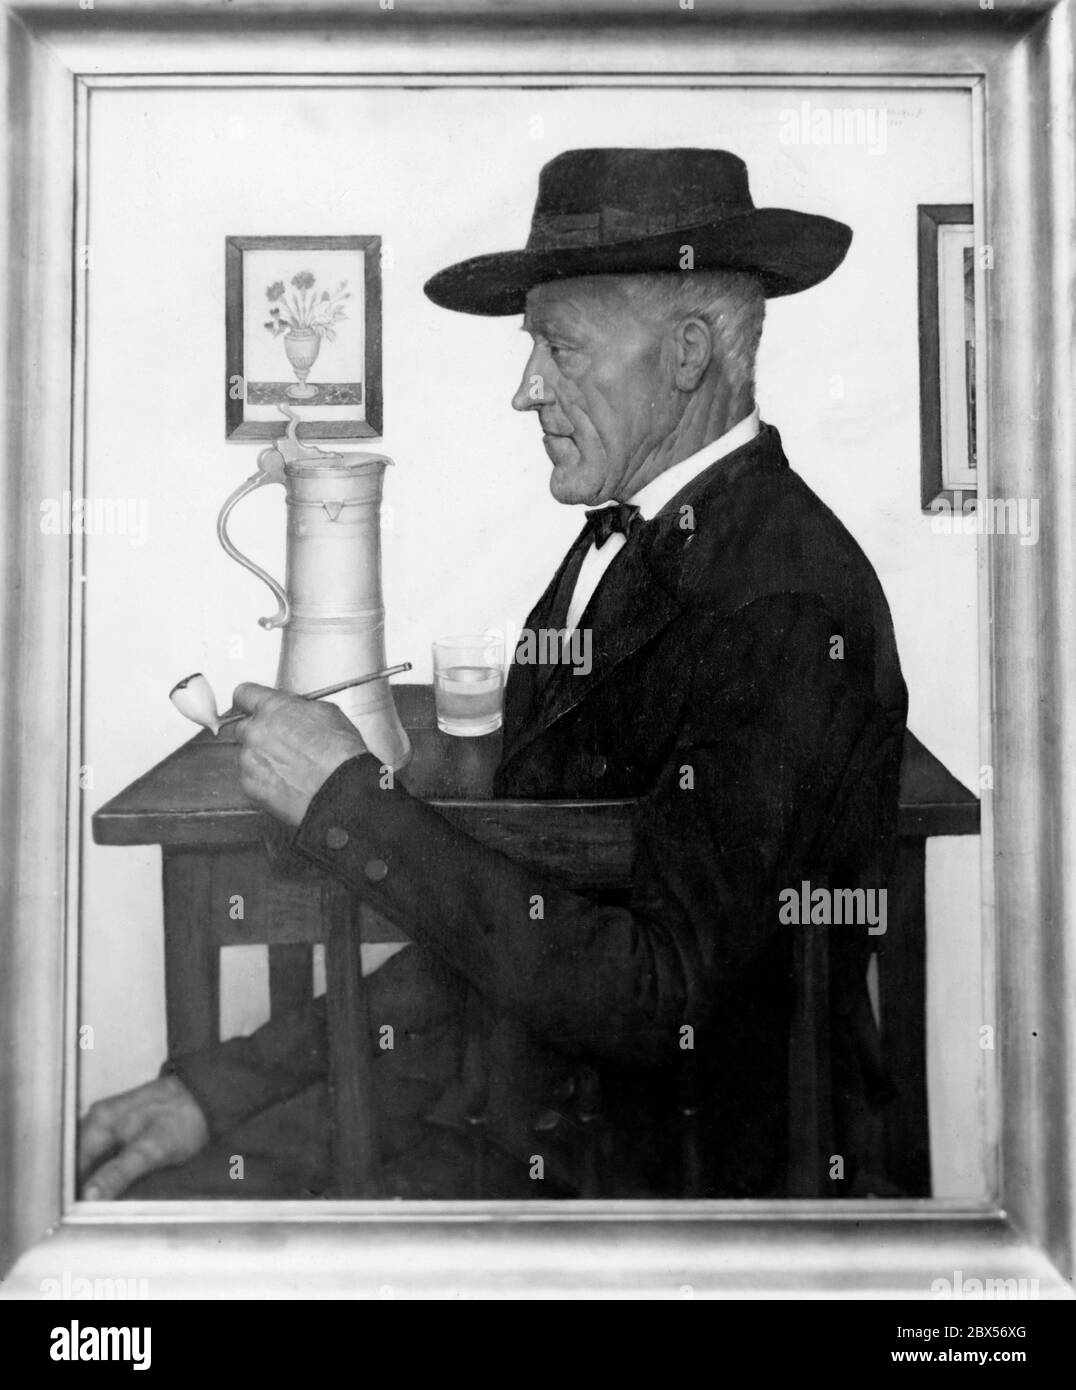 Le tableau 'Elsaessischer Bauer' du peintre G. Stosskopf montre un homme avec un chapeau, assis à une table. Il tient un tuyau dans sa main. Sur la table se trouve une verseuse d'eau et un verre d'eau. Il porte un costume. Sur le mur est accrochée une image avec un vase de fleur. La photo a été exposée à la Kunsthalle de Berlin en 1941 lors de l'exposition 'der deutsche Mensch'. Banque D'Images